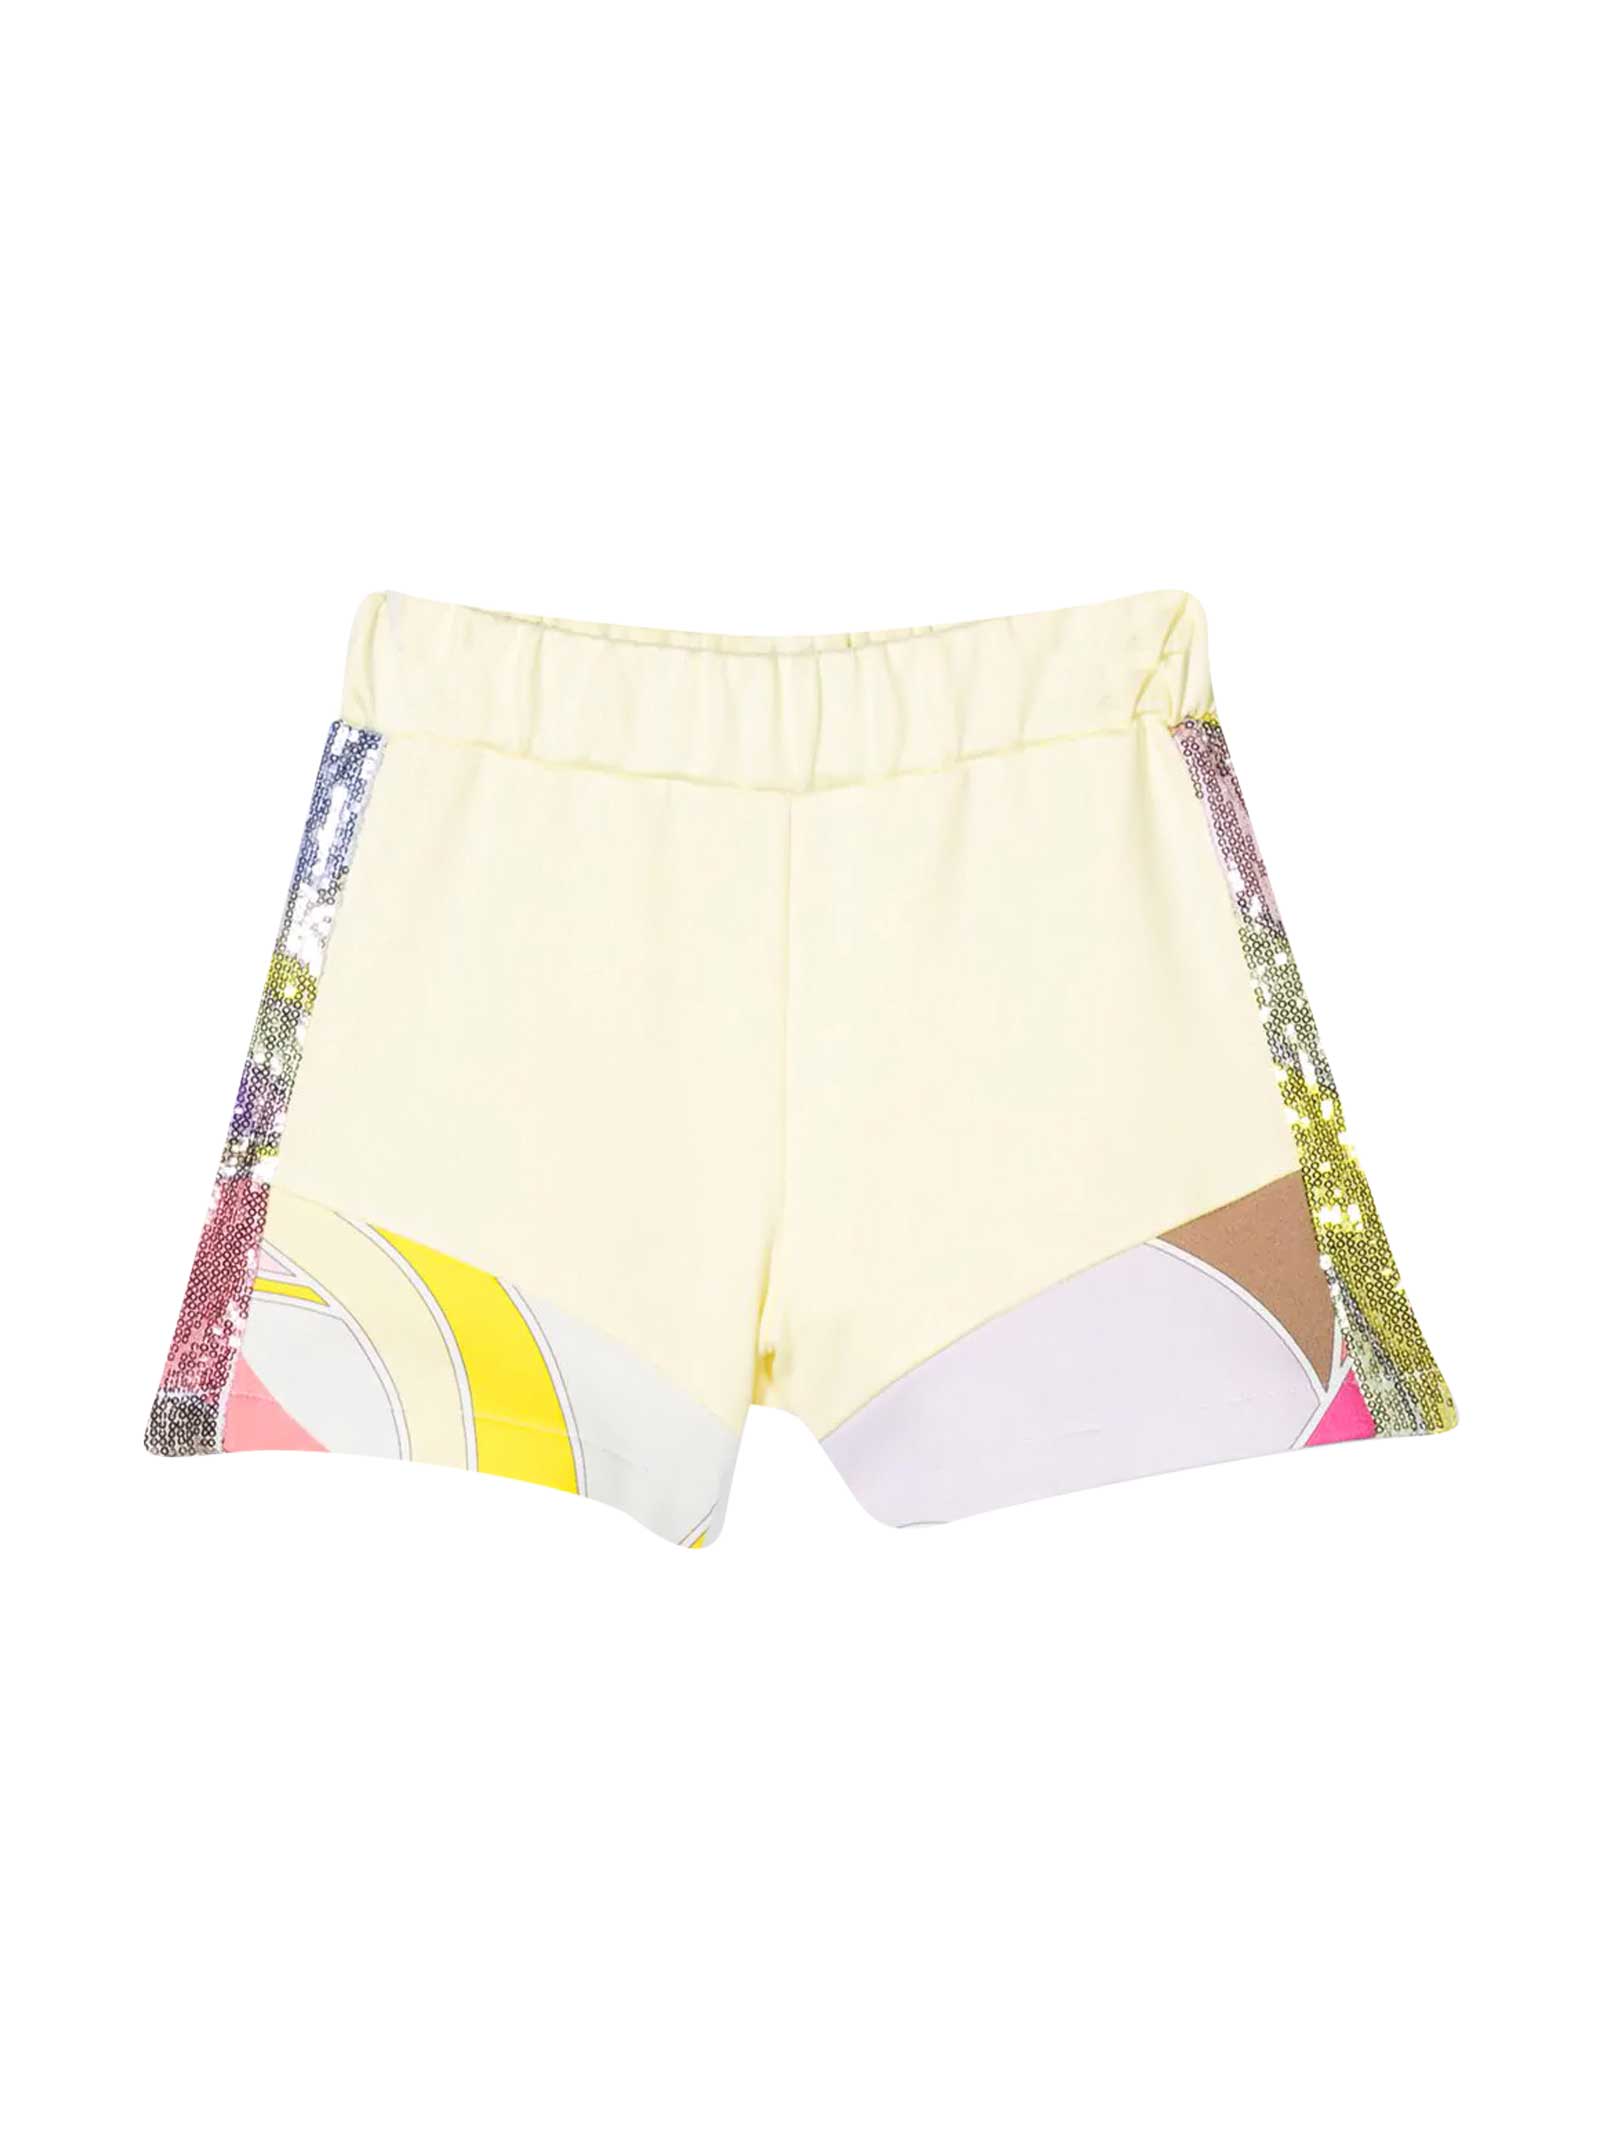 Emilio Pucci Kids' Colored Shorts In Giallo/multicolor